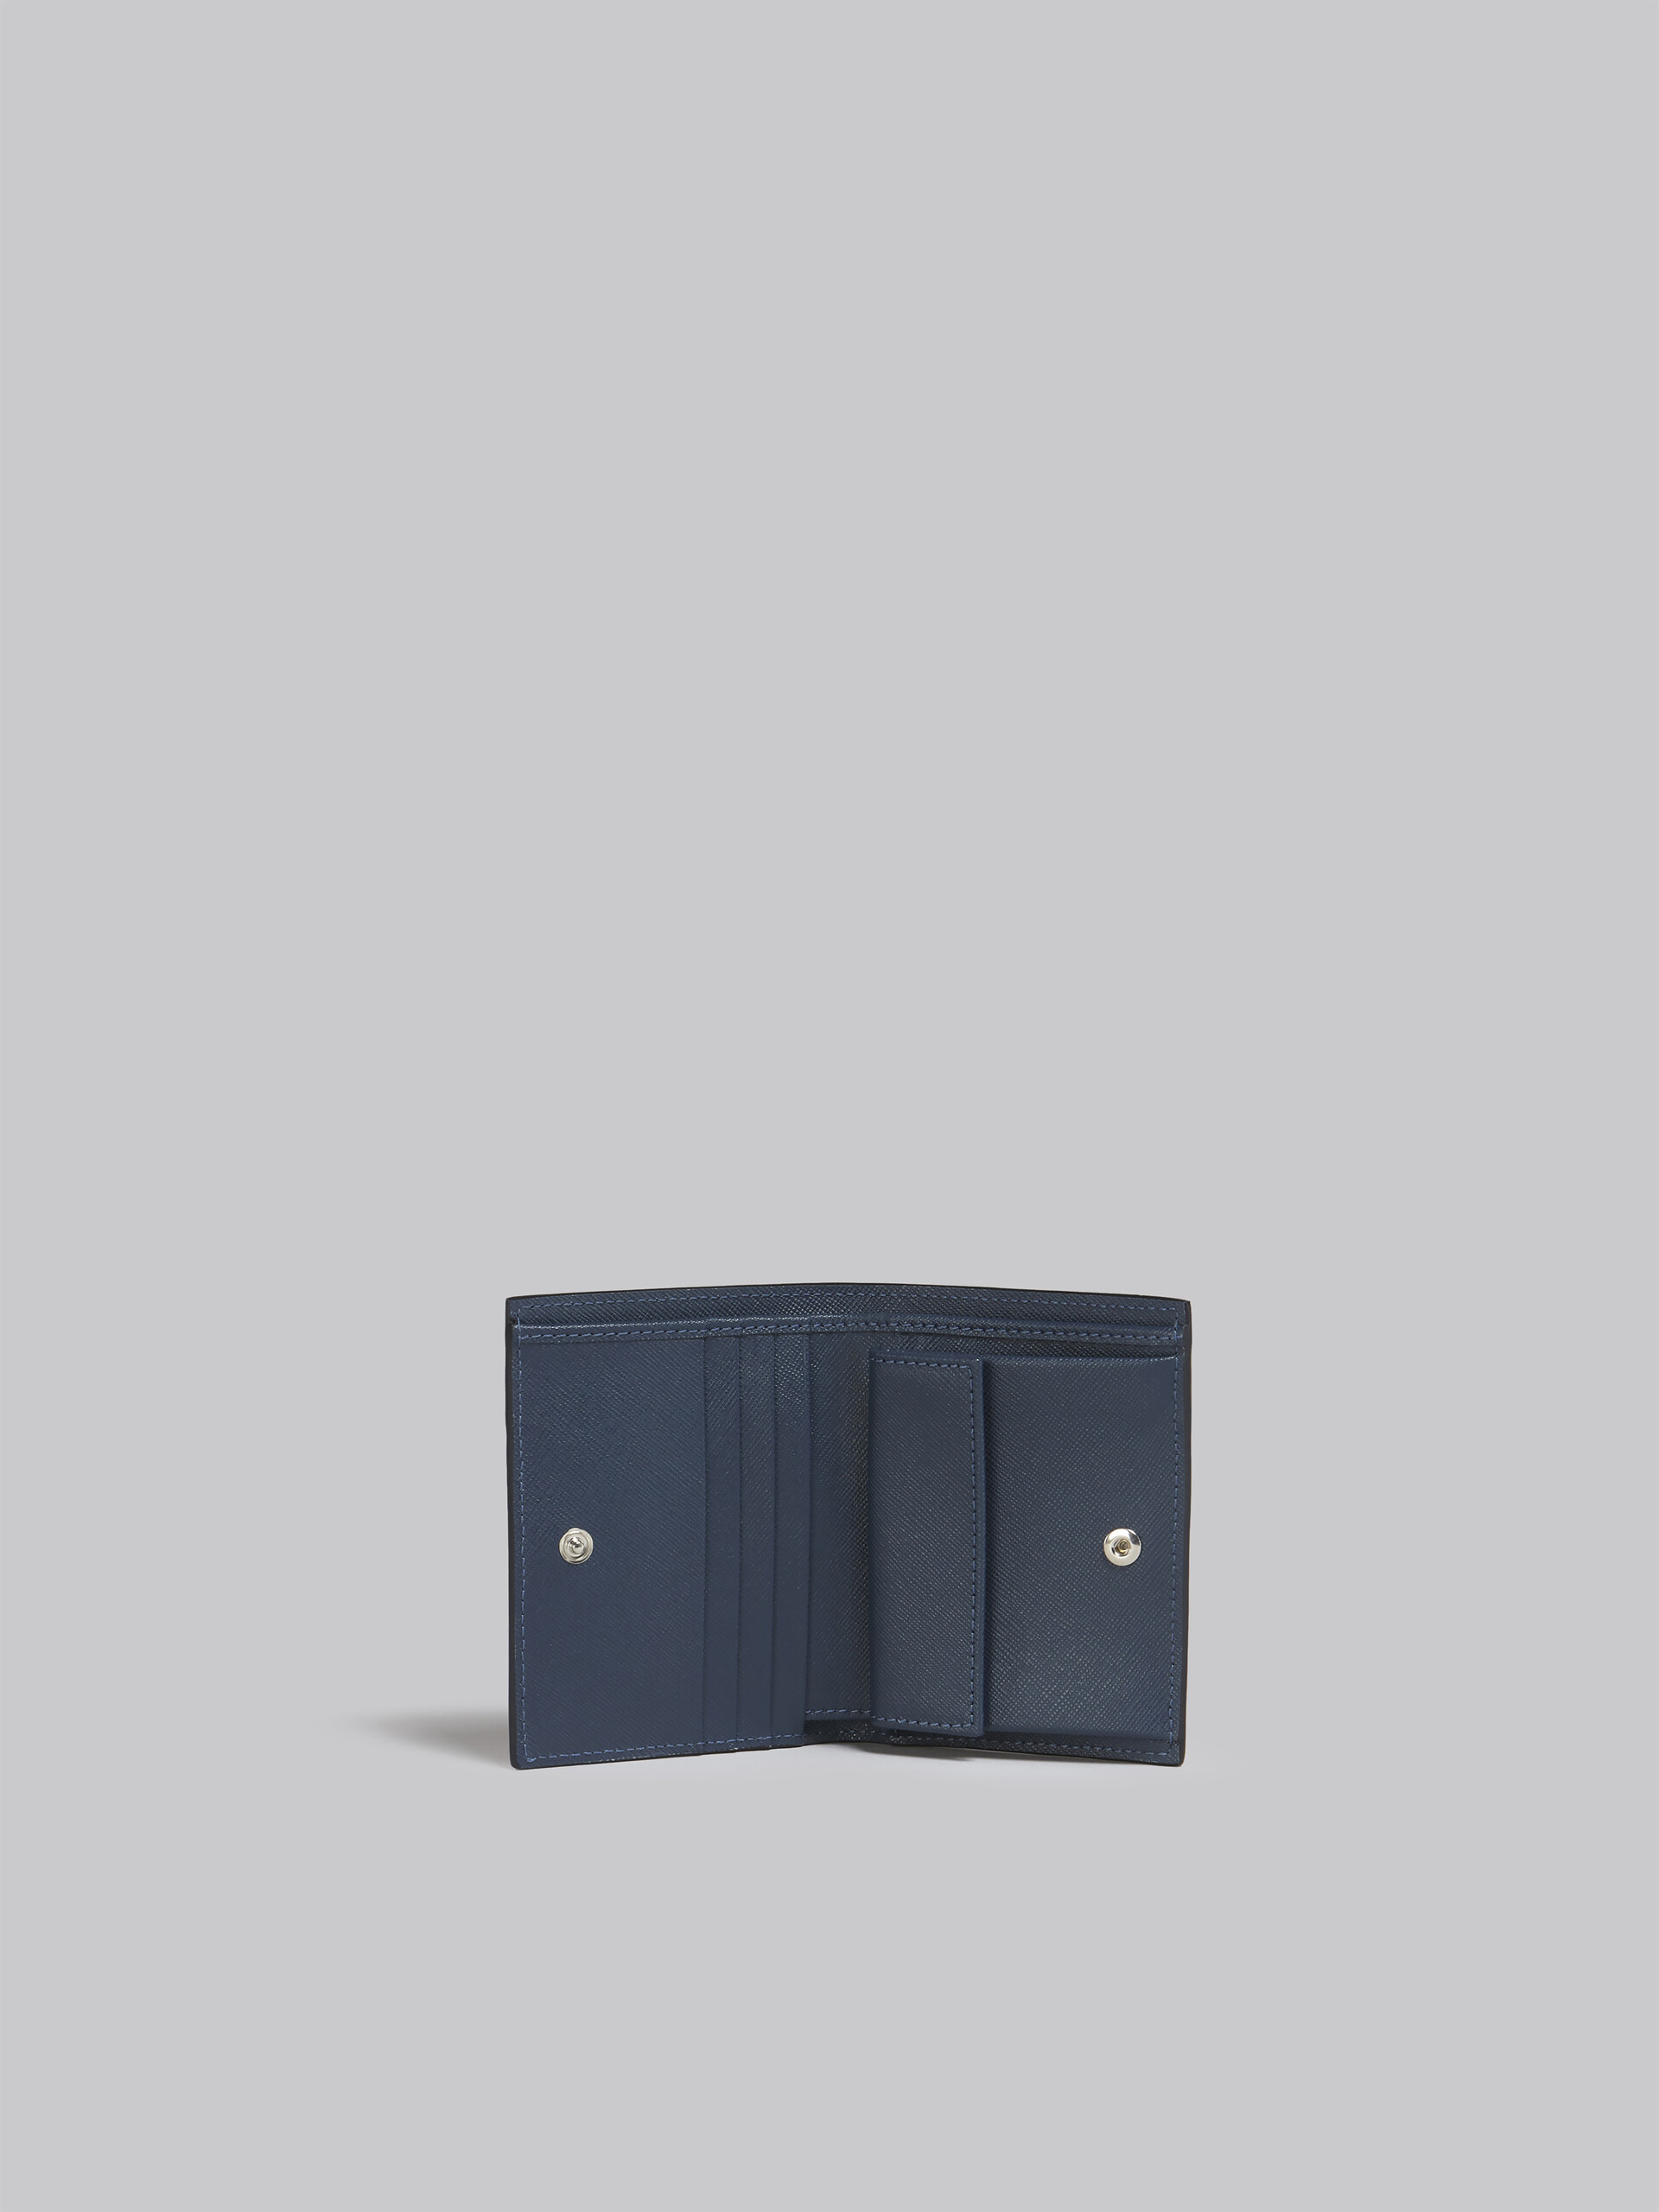 Portafoglio bi-fold in saffiano blu - Portafogli - Image 2